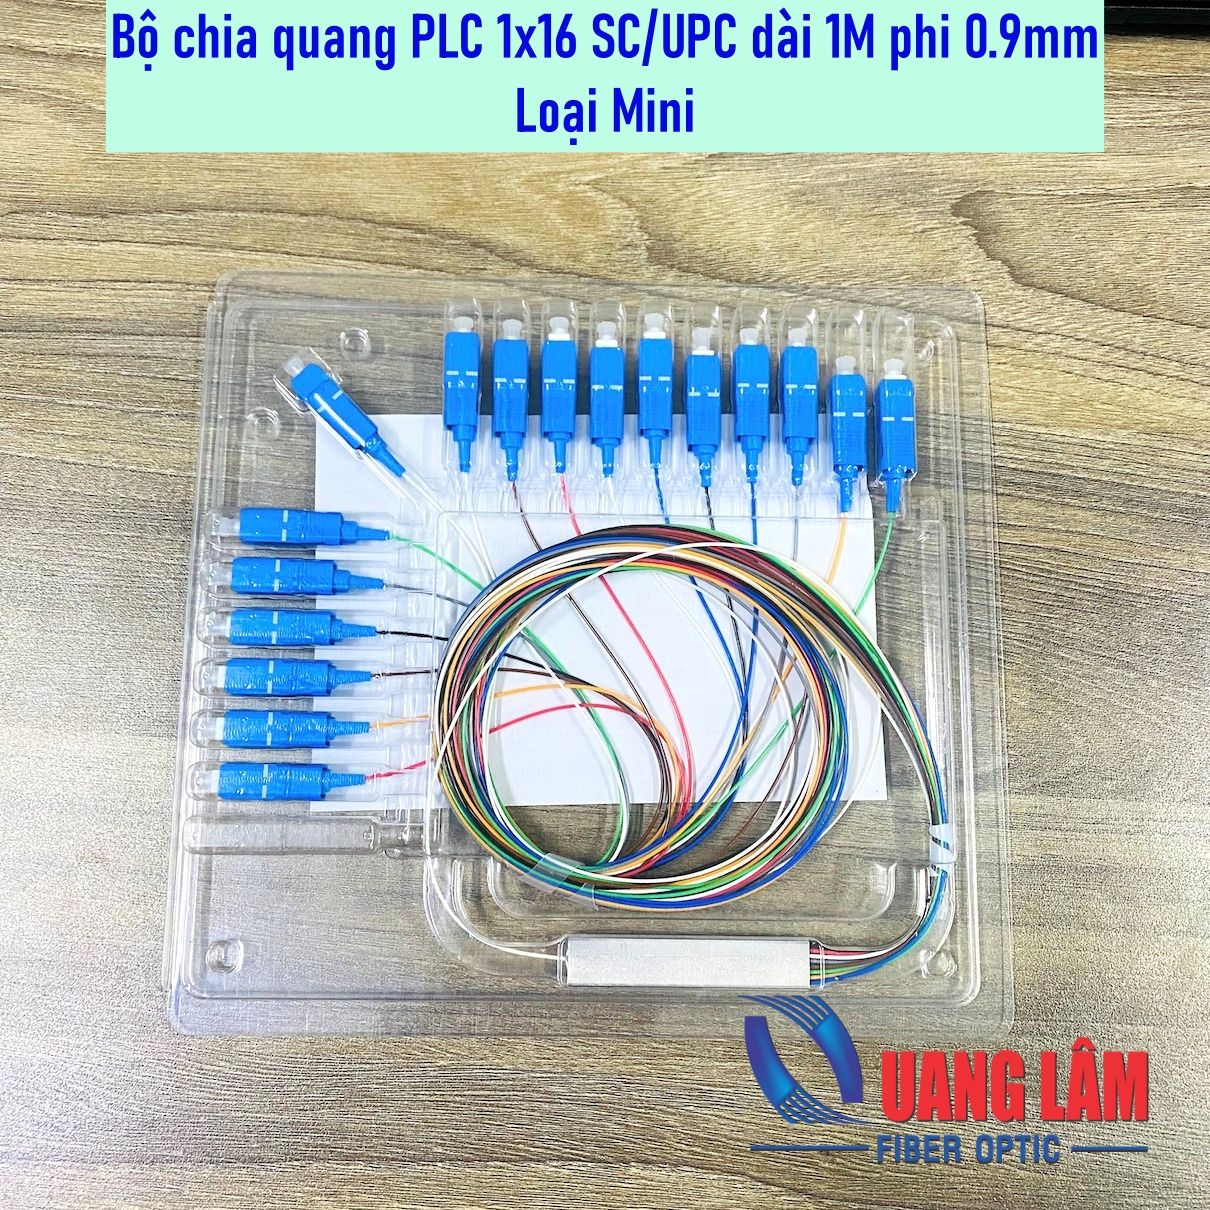 Bộ chia quang PLC 1x16 SC-UPC phi 0.9mm dài 1M - Loại Mini